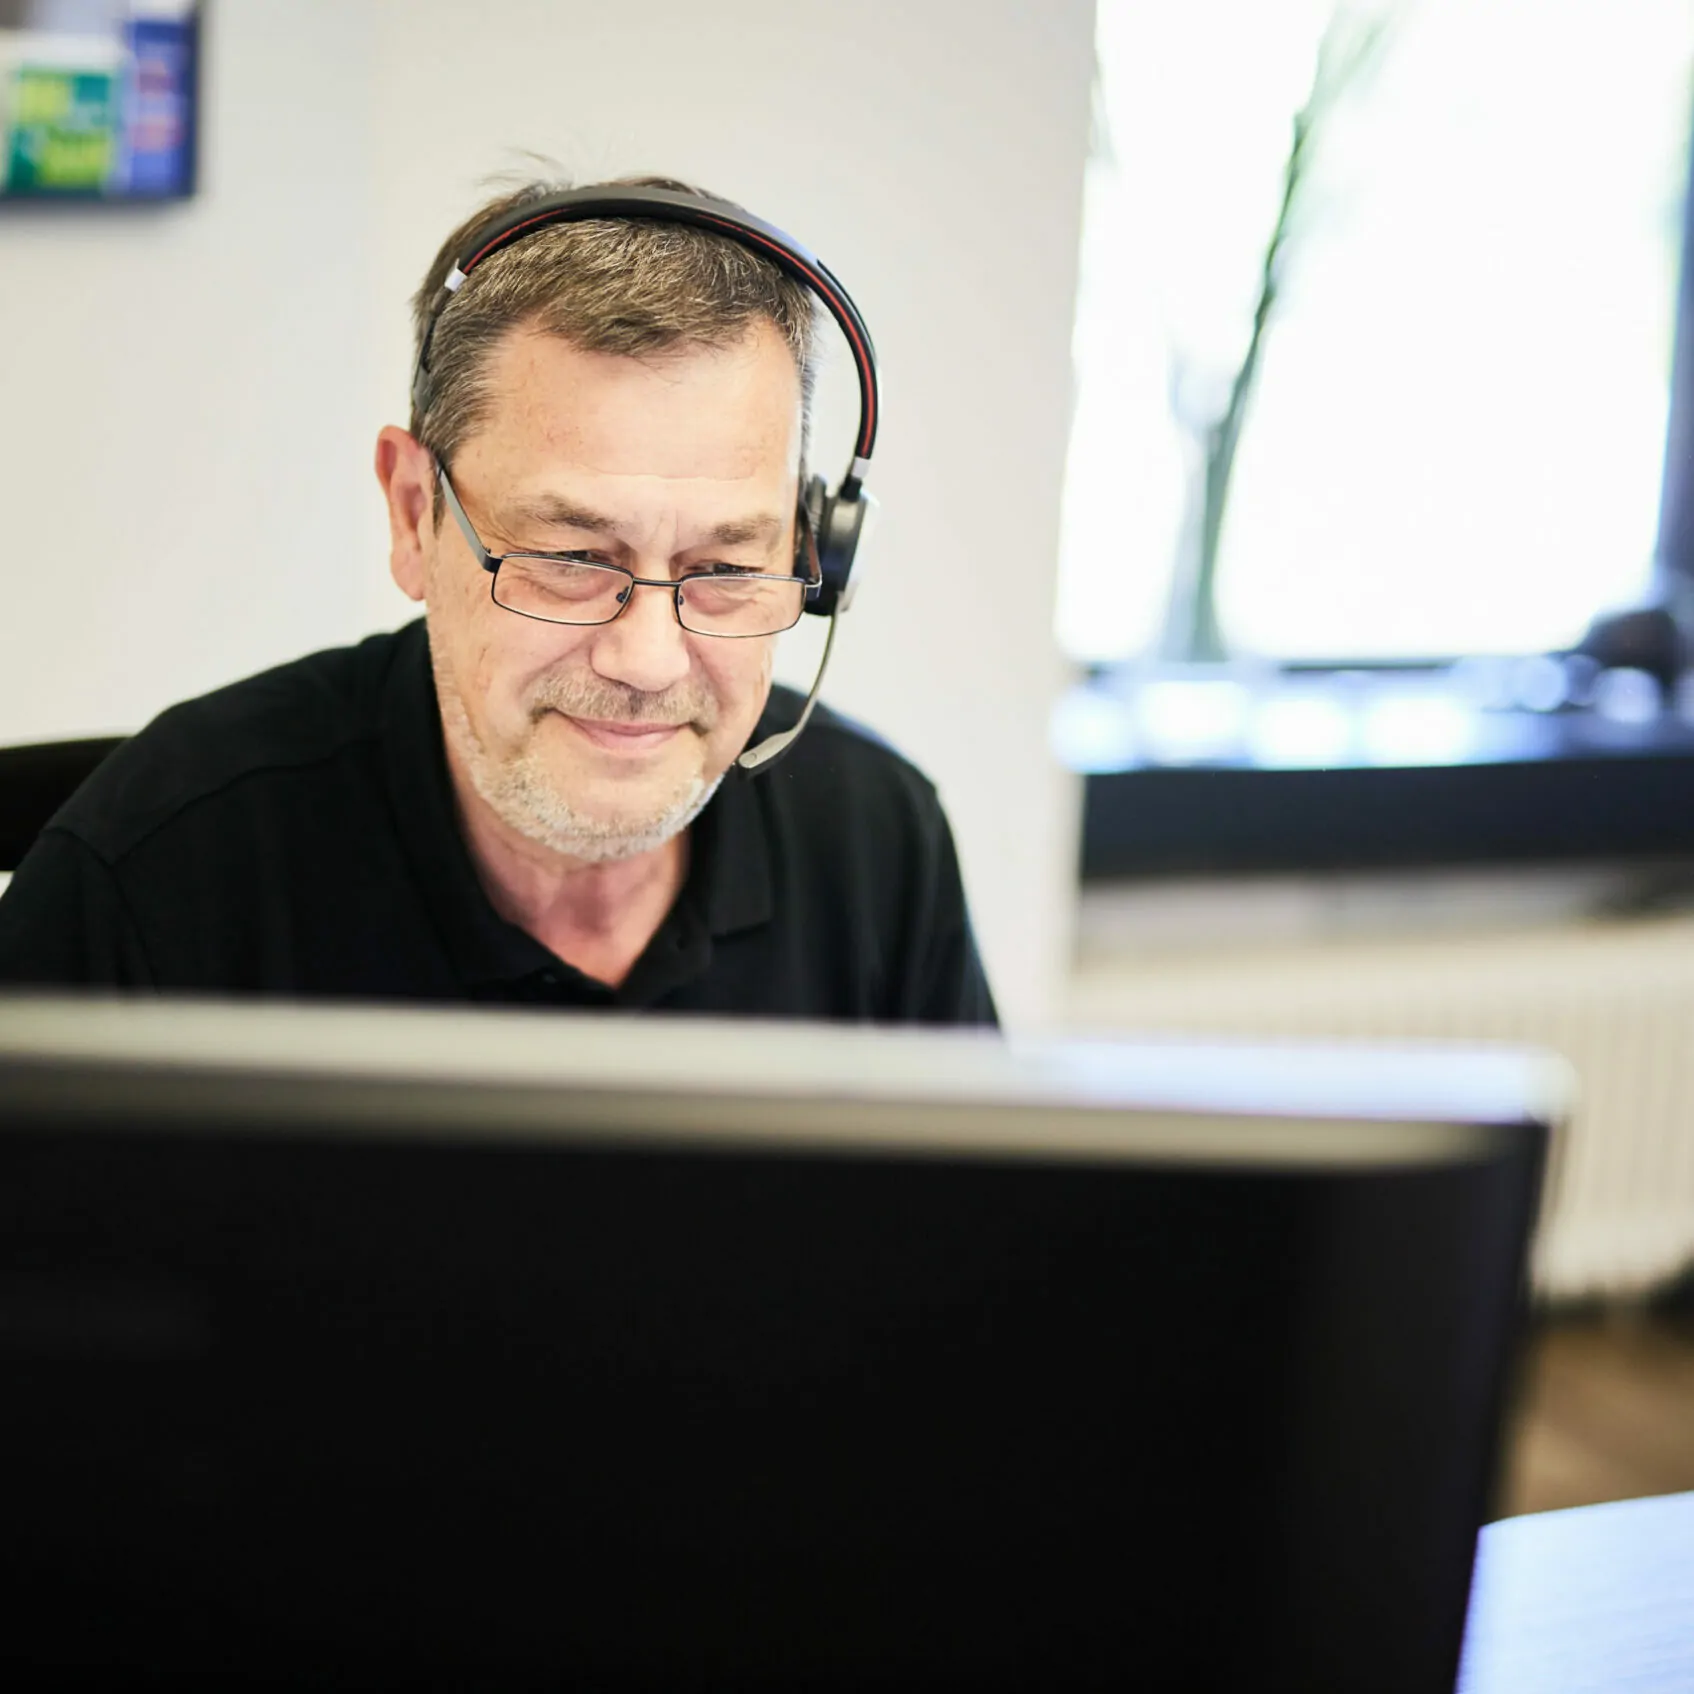 Foto von einem älteren valantic-CX-Mitarbeiter, der Kopfhörer trägt und konzentriert am Computer arbeitet.